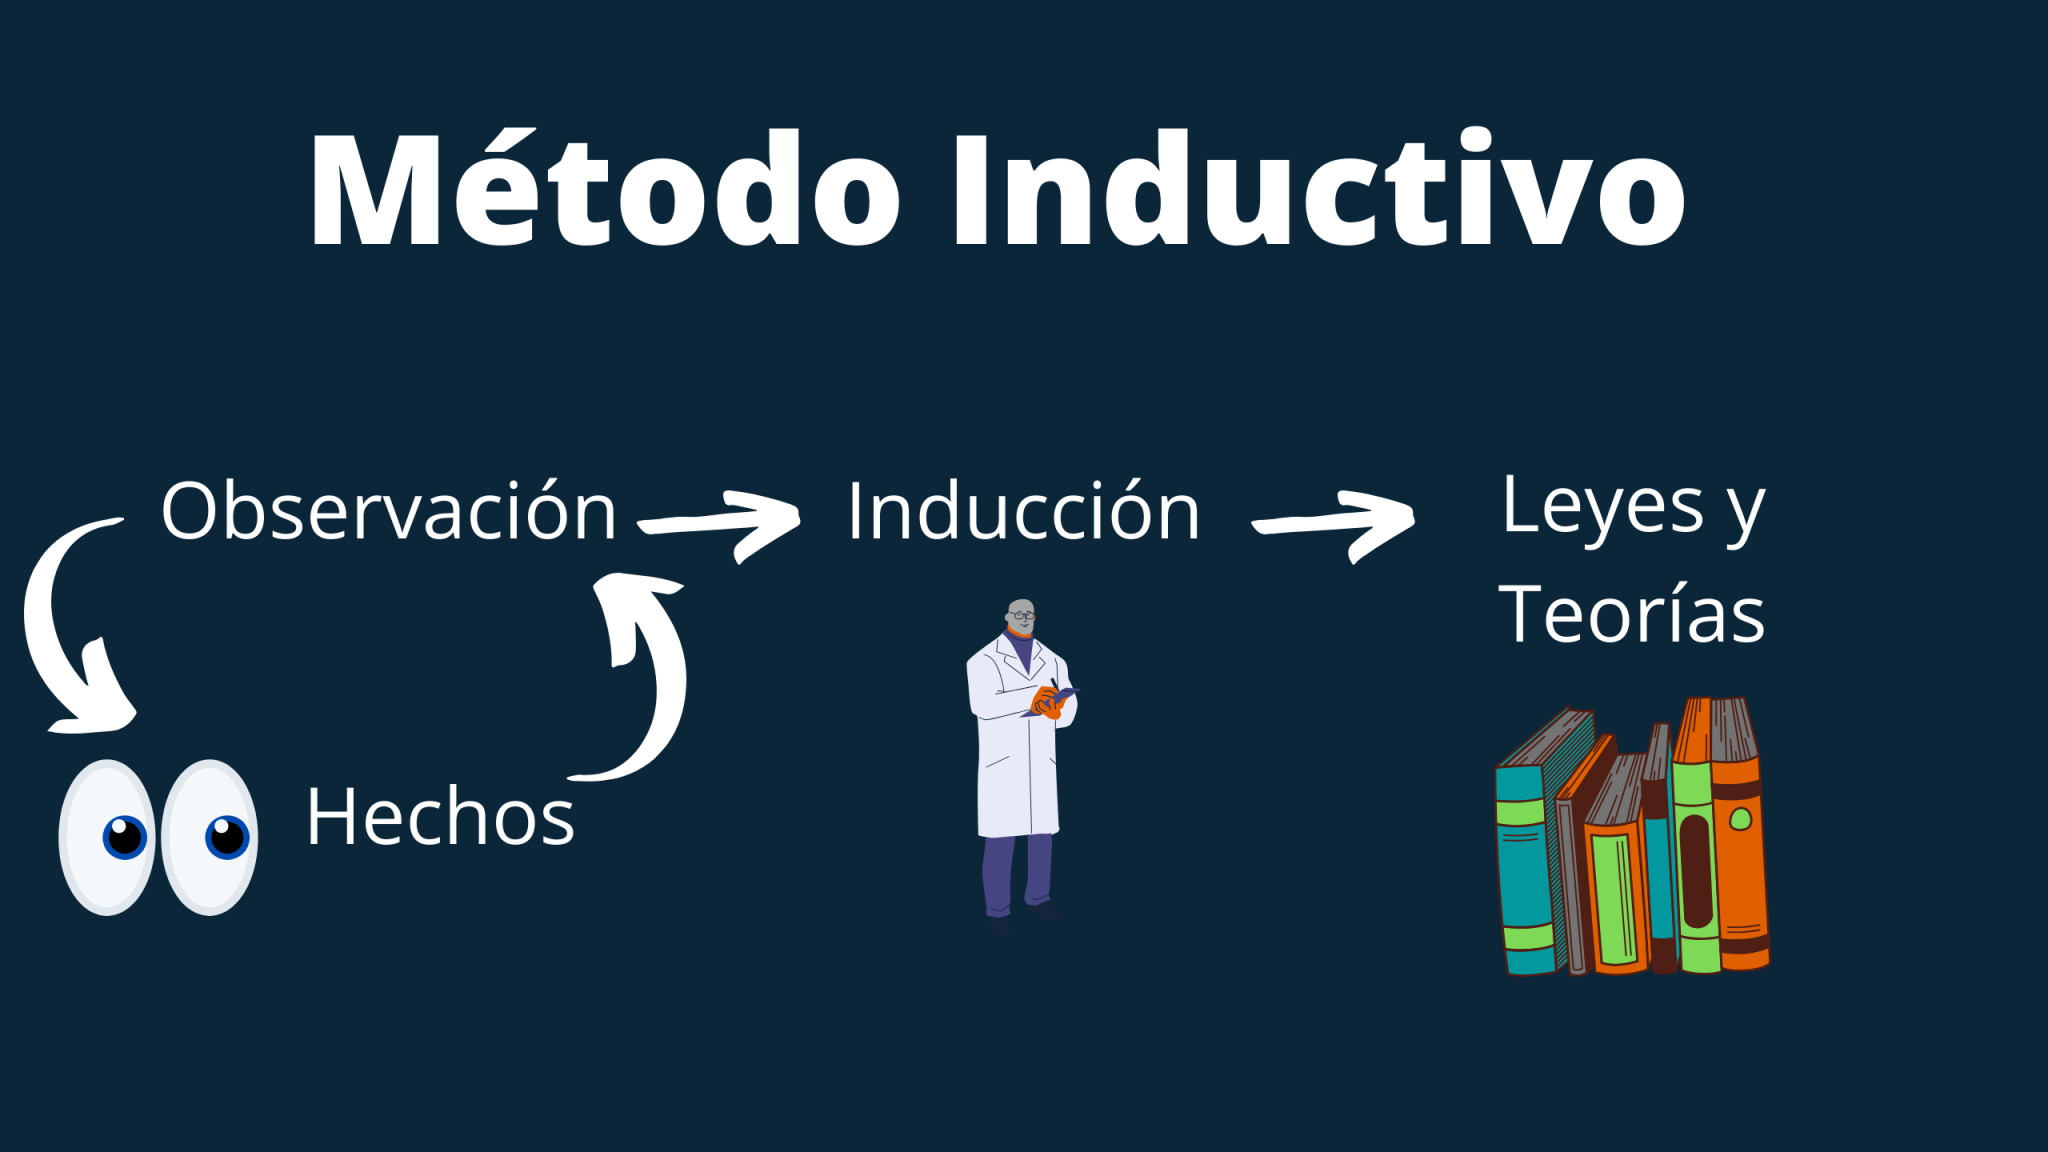 Metodo Inductivo Que Es Pasos Caracteristicas Tipos Ejemplos Images ...